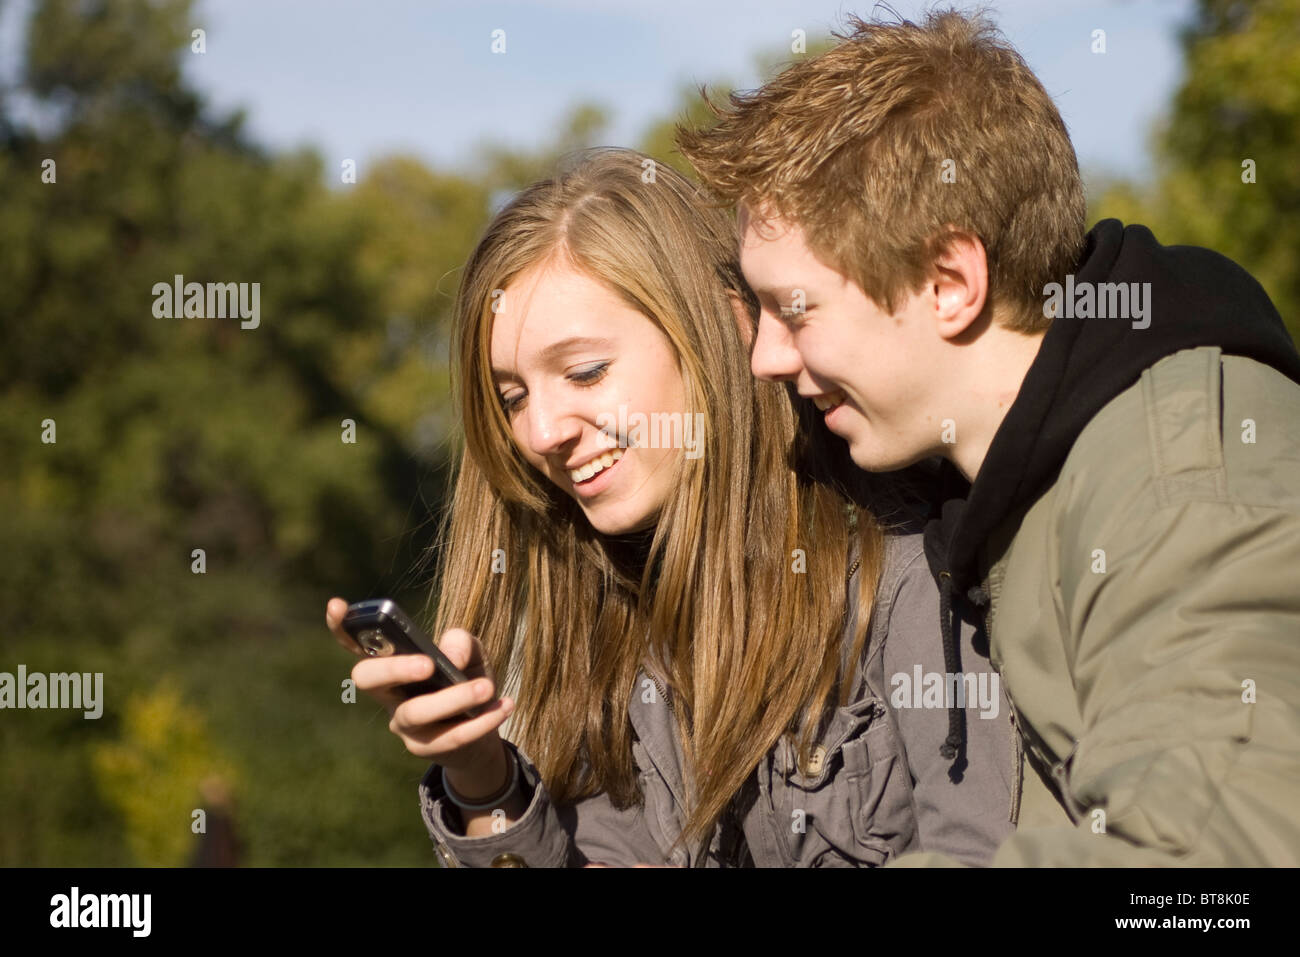 Ragazzo adolescente e una ragazza nel parco guardando il telefono cellulare insieme, condividendo, sorridente Foto Stock